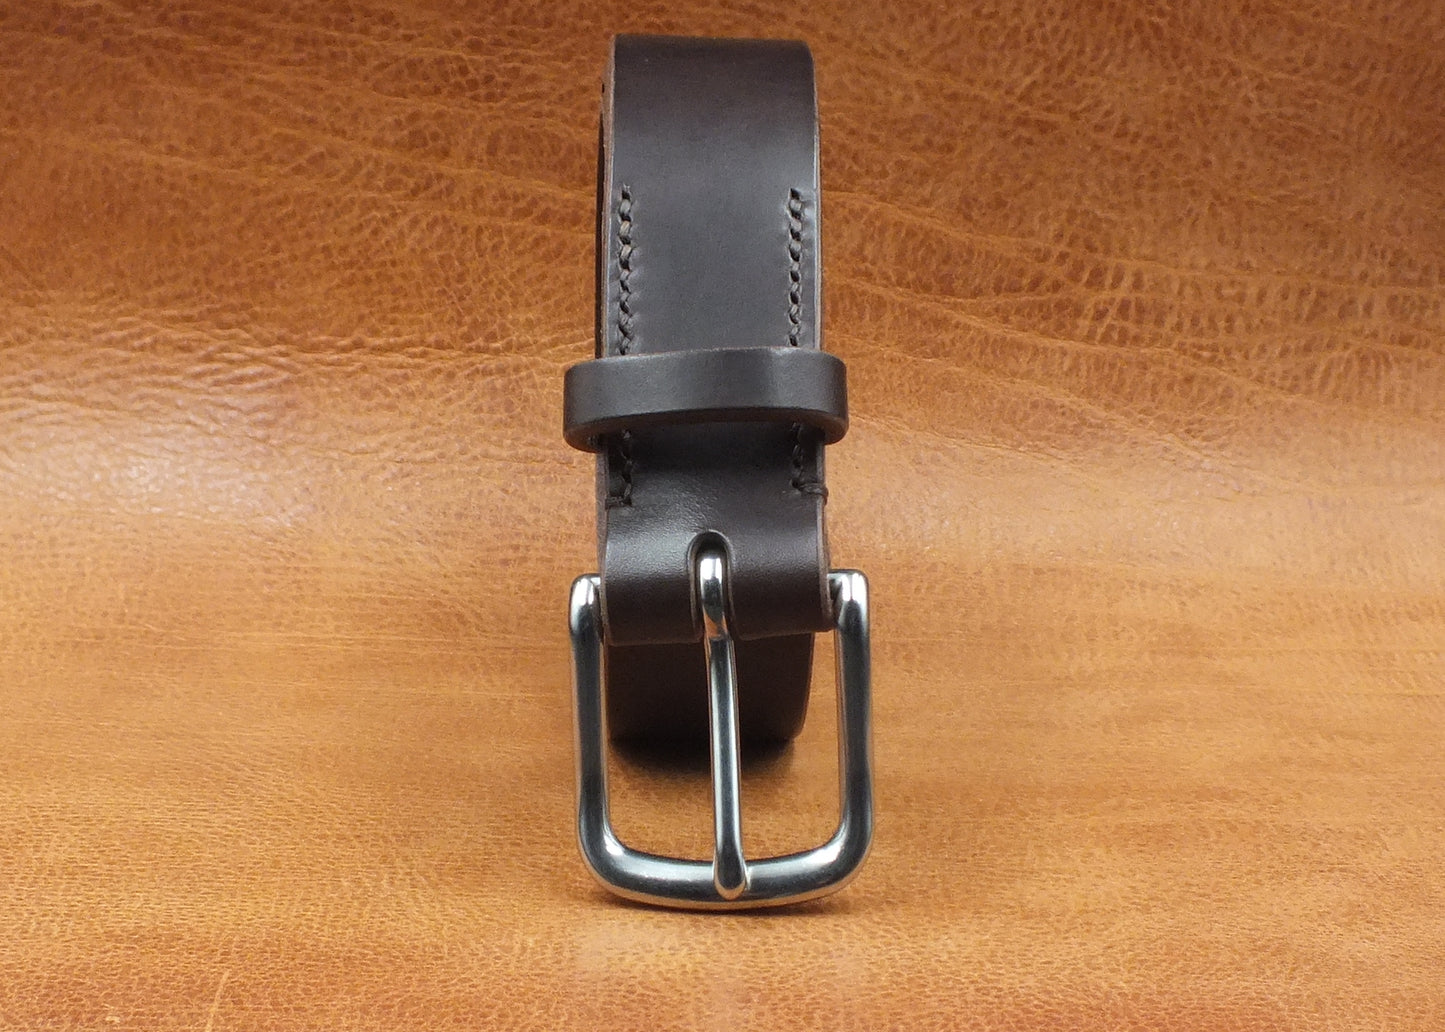 SALE - Dark Brown Walpier 'Rocky' Leather Belt - 1.5" (38mm wide) - 32" to 38" Waist